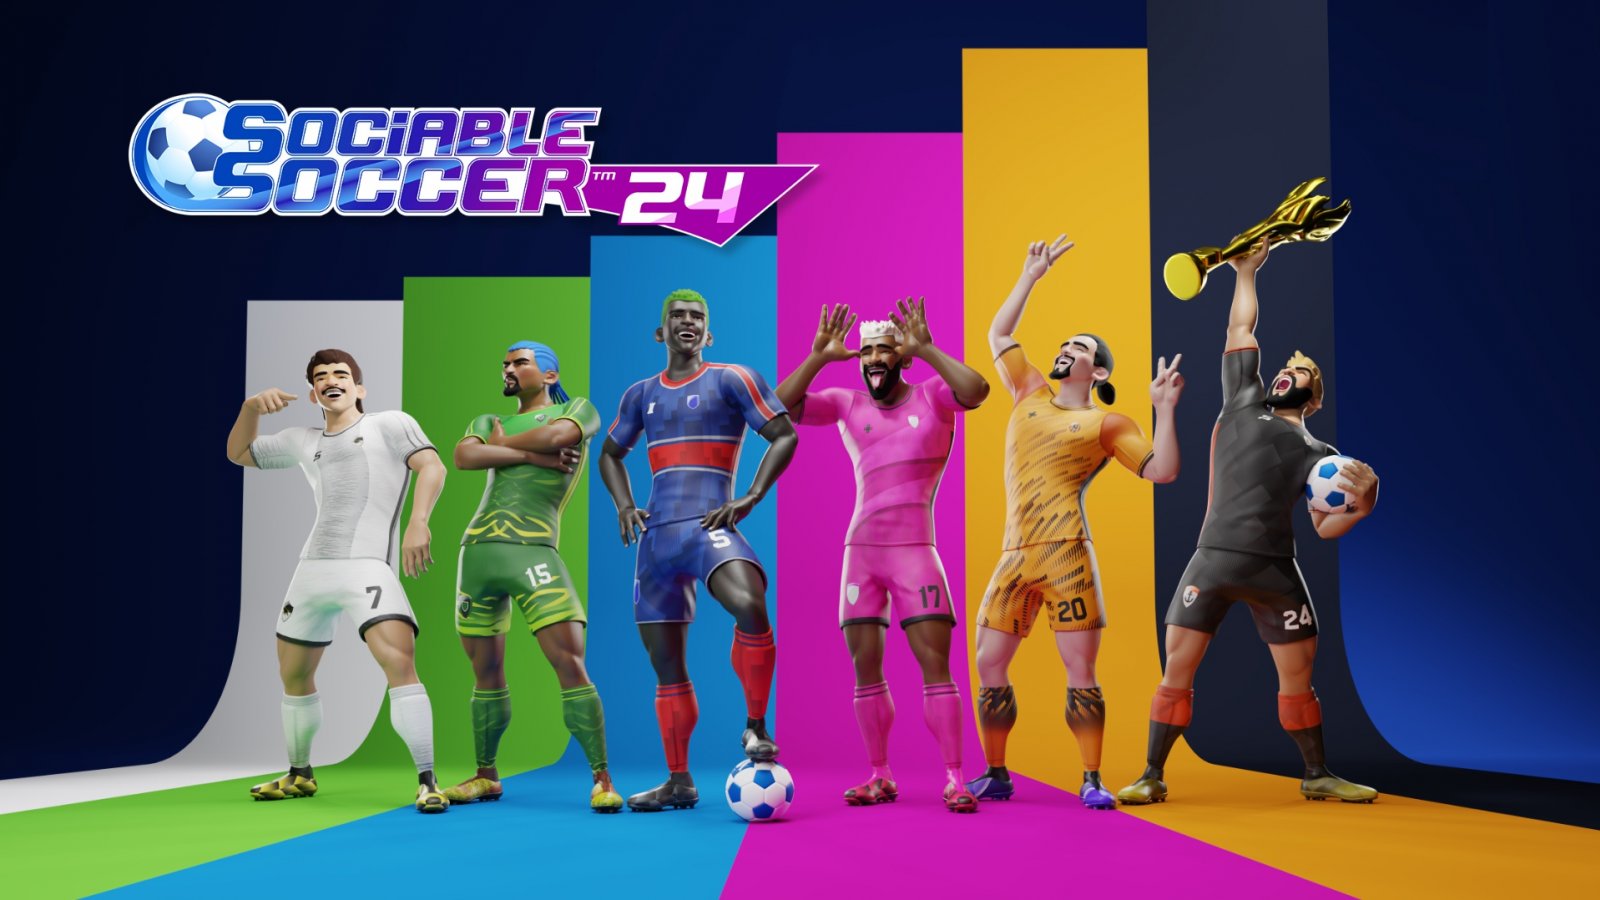 Sociable Soccer 24 uscirà su PC e console nel corso dell'anno